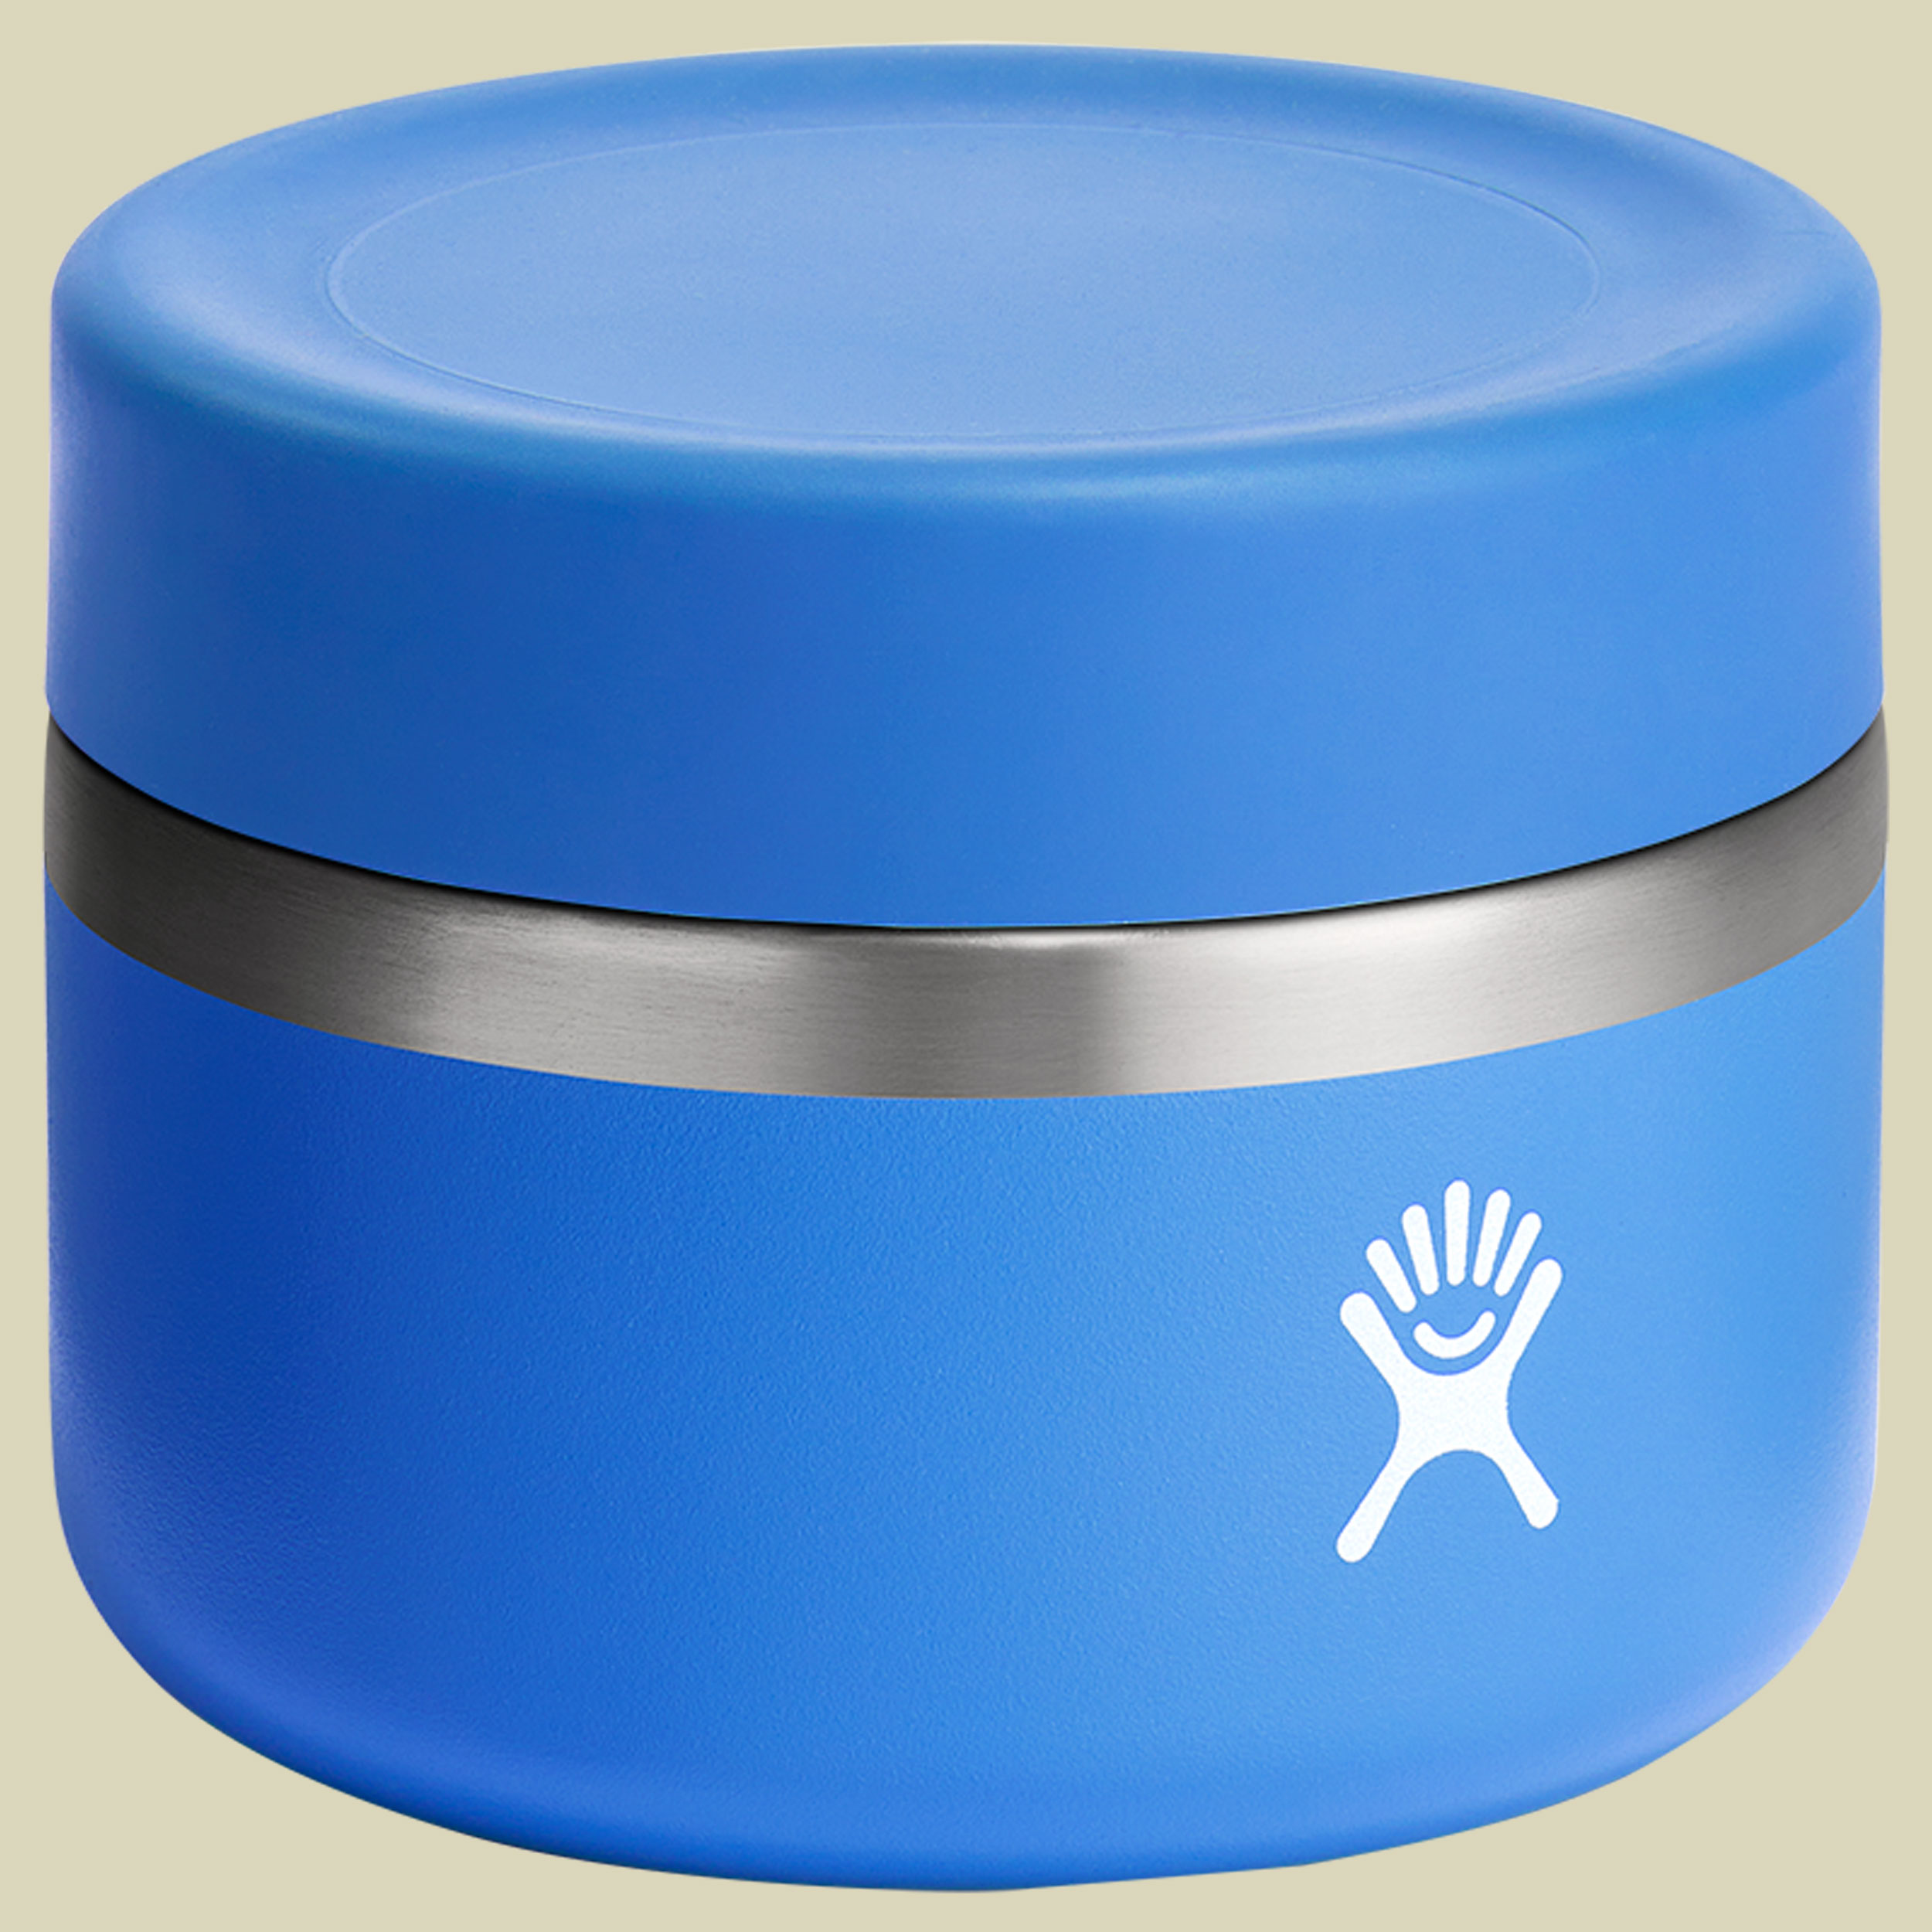 12 oz Insulated Food Jar blau 355 - Farbe cascade